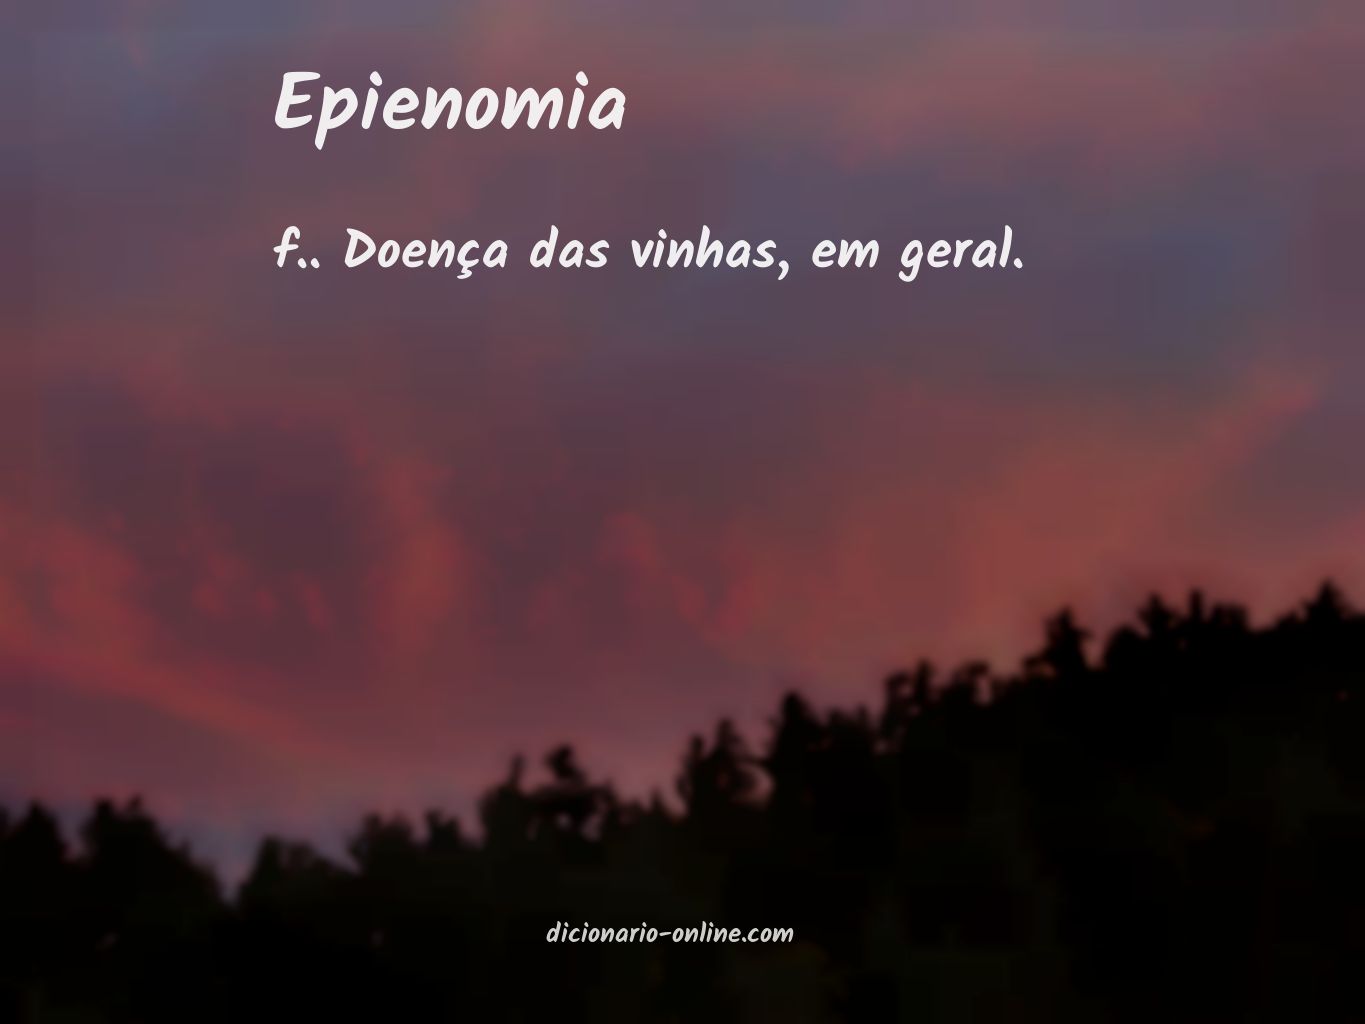 Significado de epienomia